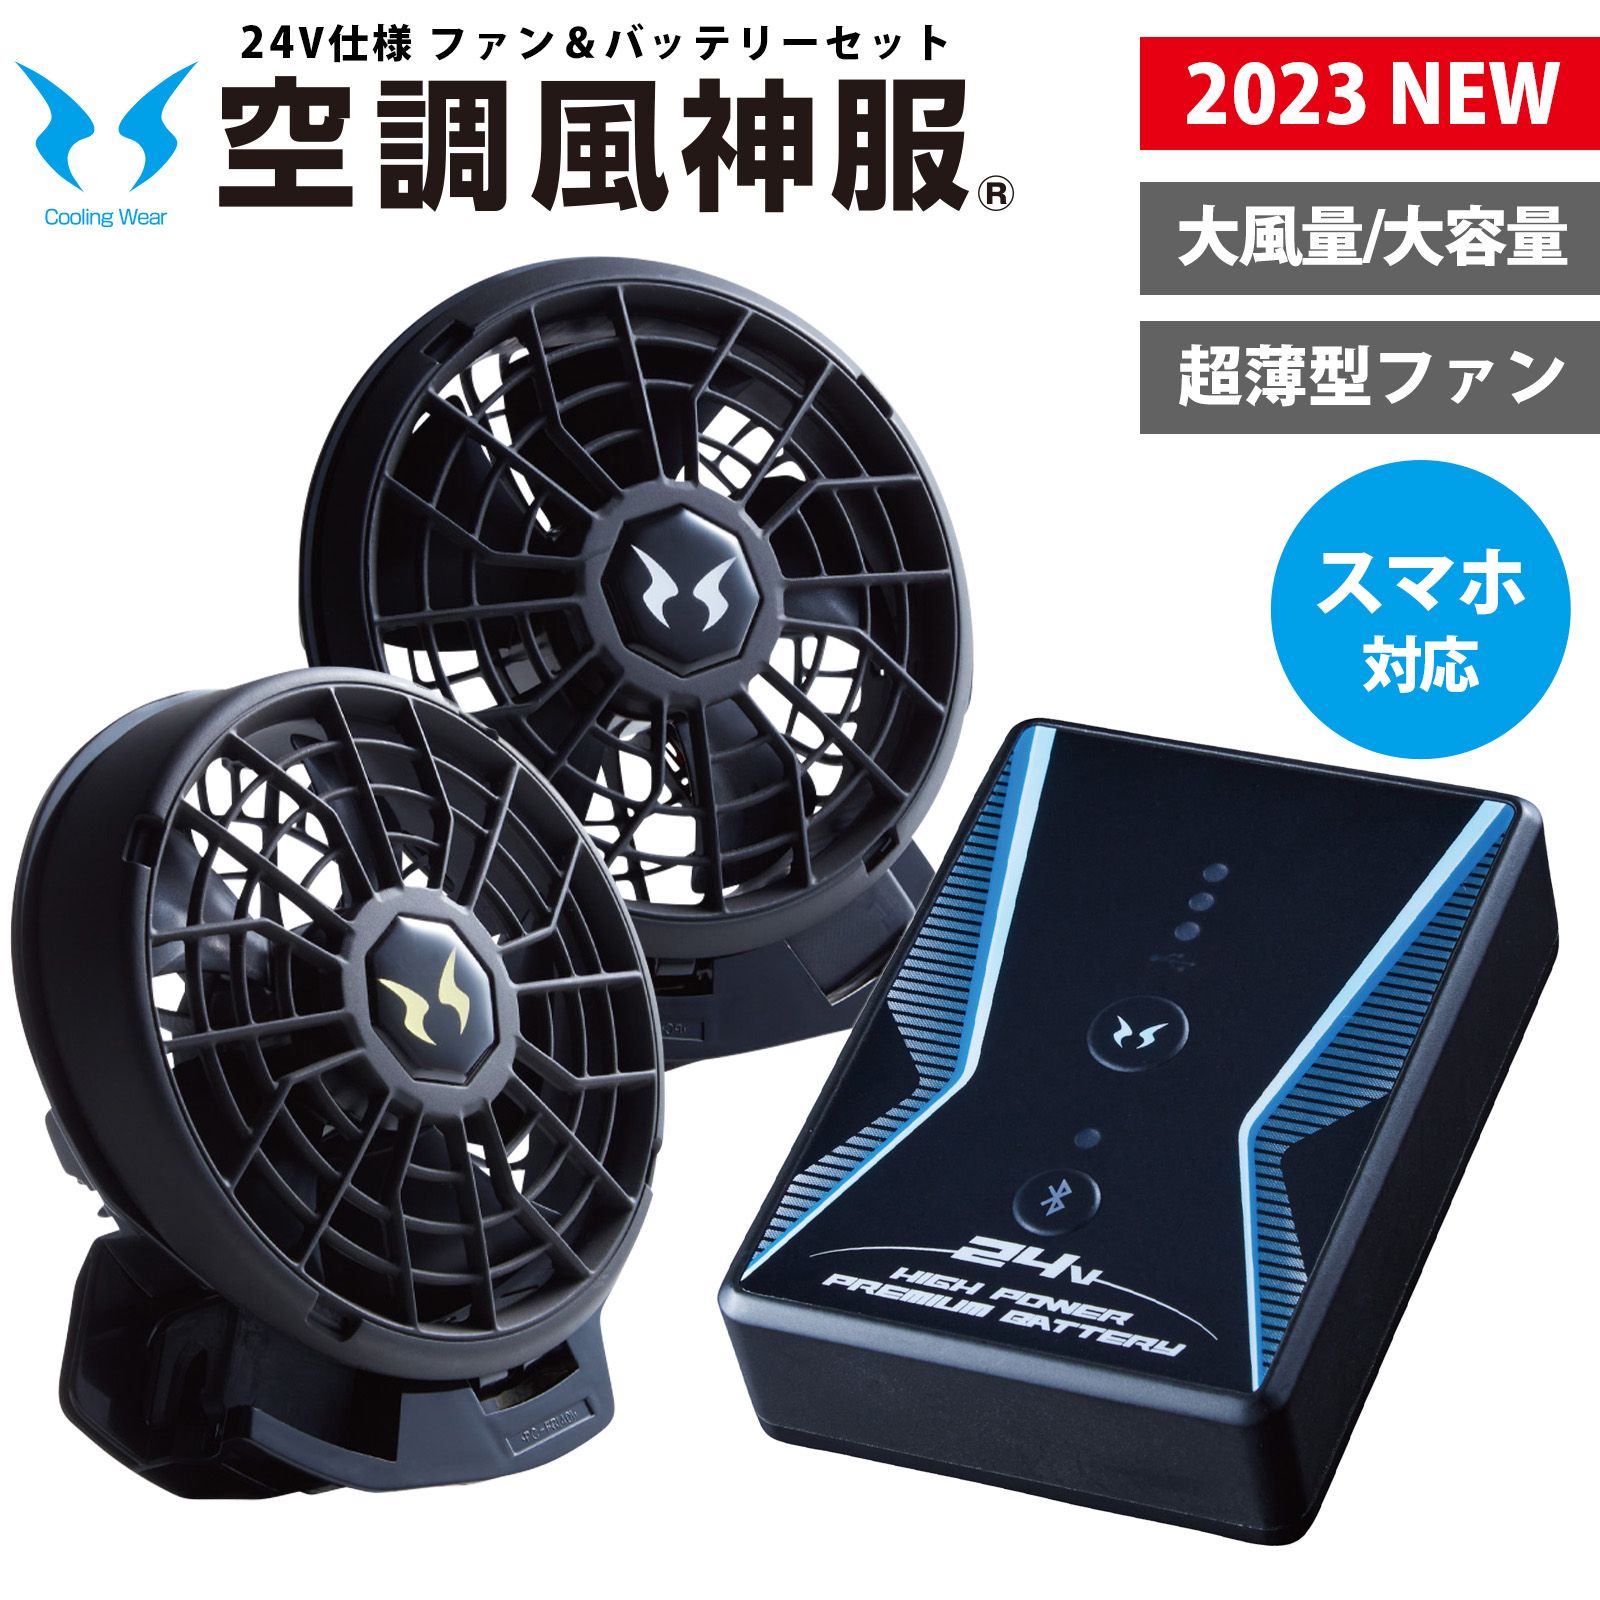 高速配送 空調風神服 24V バッテリー ファン セット 2023 新作